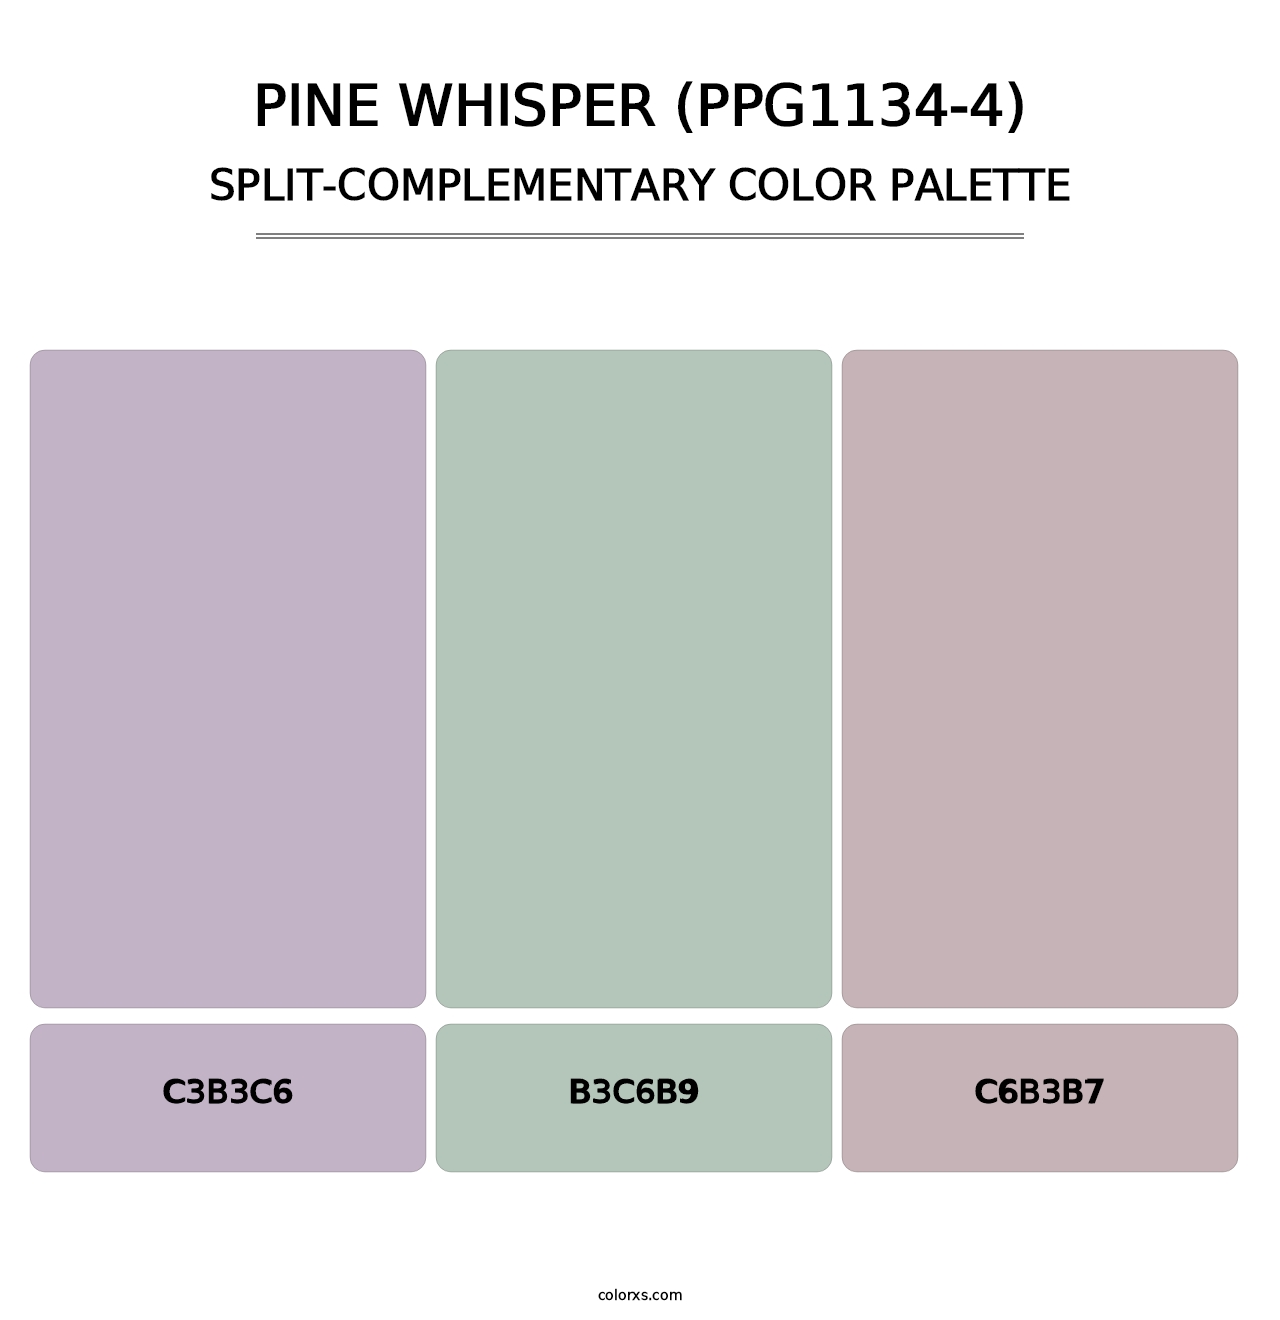 Pine Whisper (PPG1134-4) - Split-Complementary Color Palette